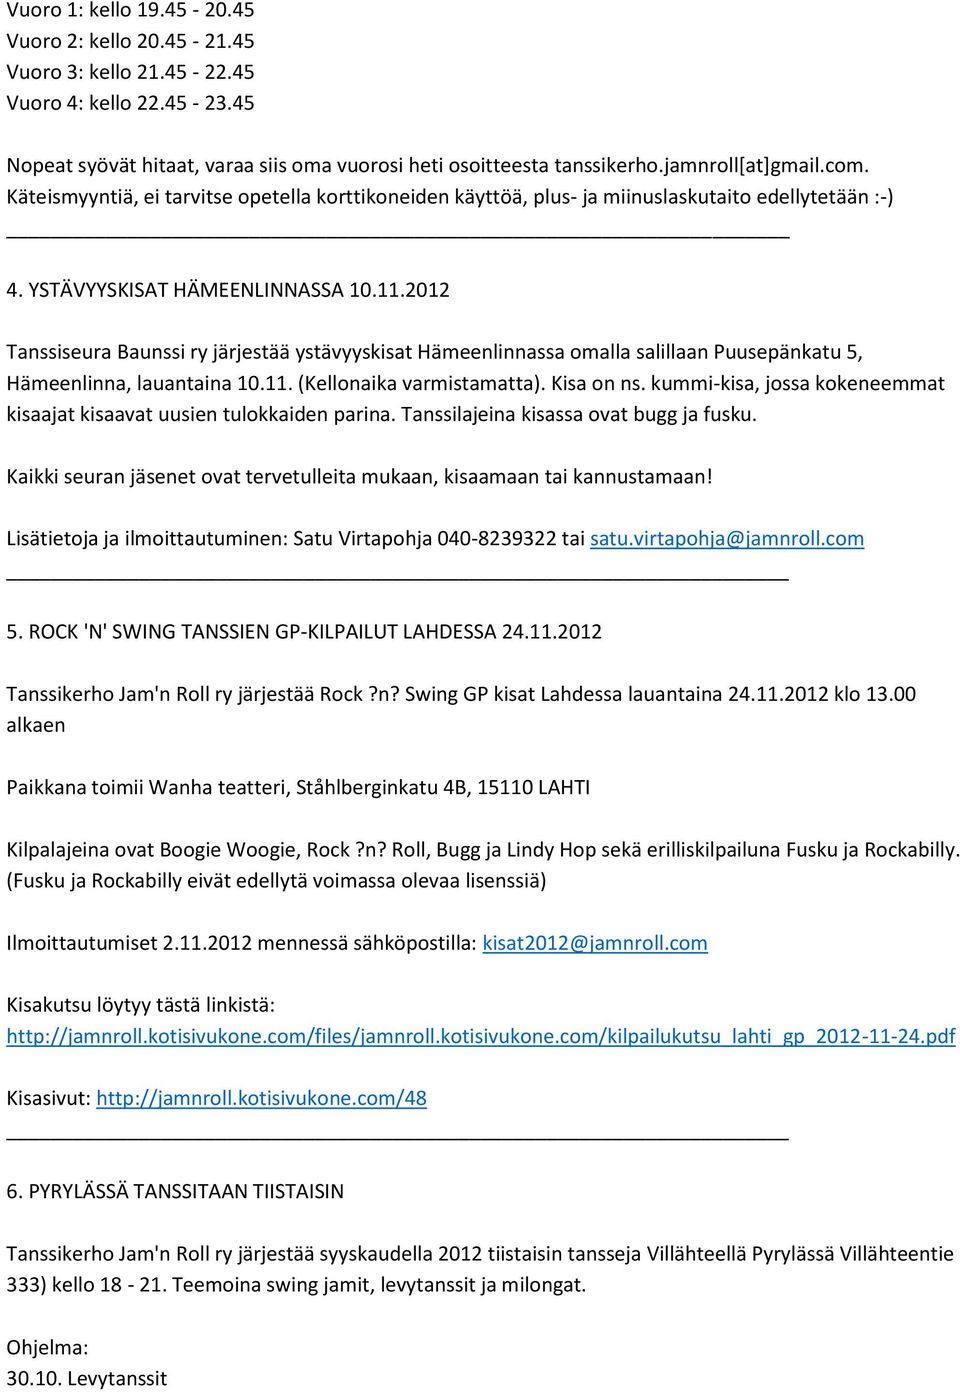 2012 Tanssiseura Baunssi ry järjestää ystävyyskisat Hämeenlinnassa omalla salillaan Puusepänkatu 5, Hämeenlinna, lauantaina 10.11. (Kellonaika varmistamatta). Kisa on ns.